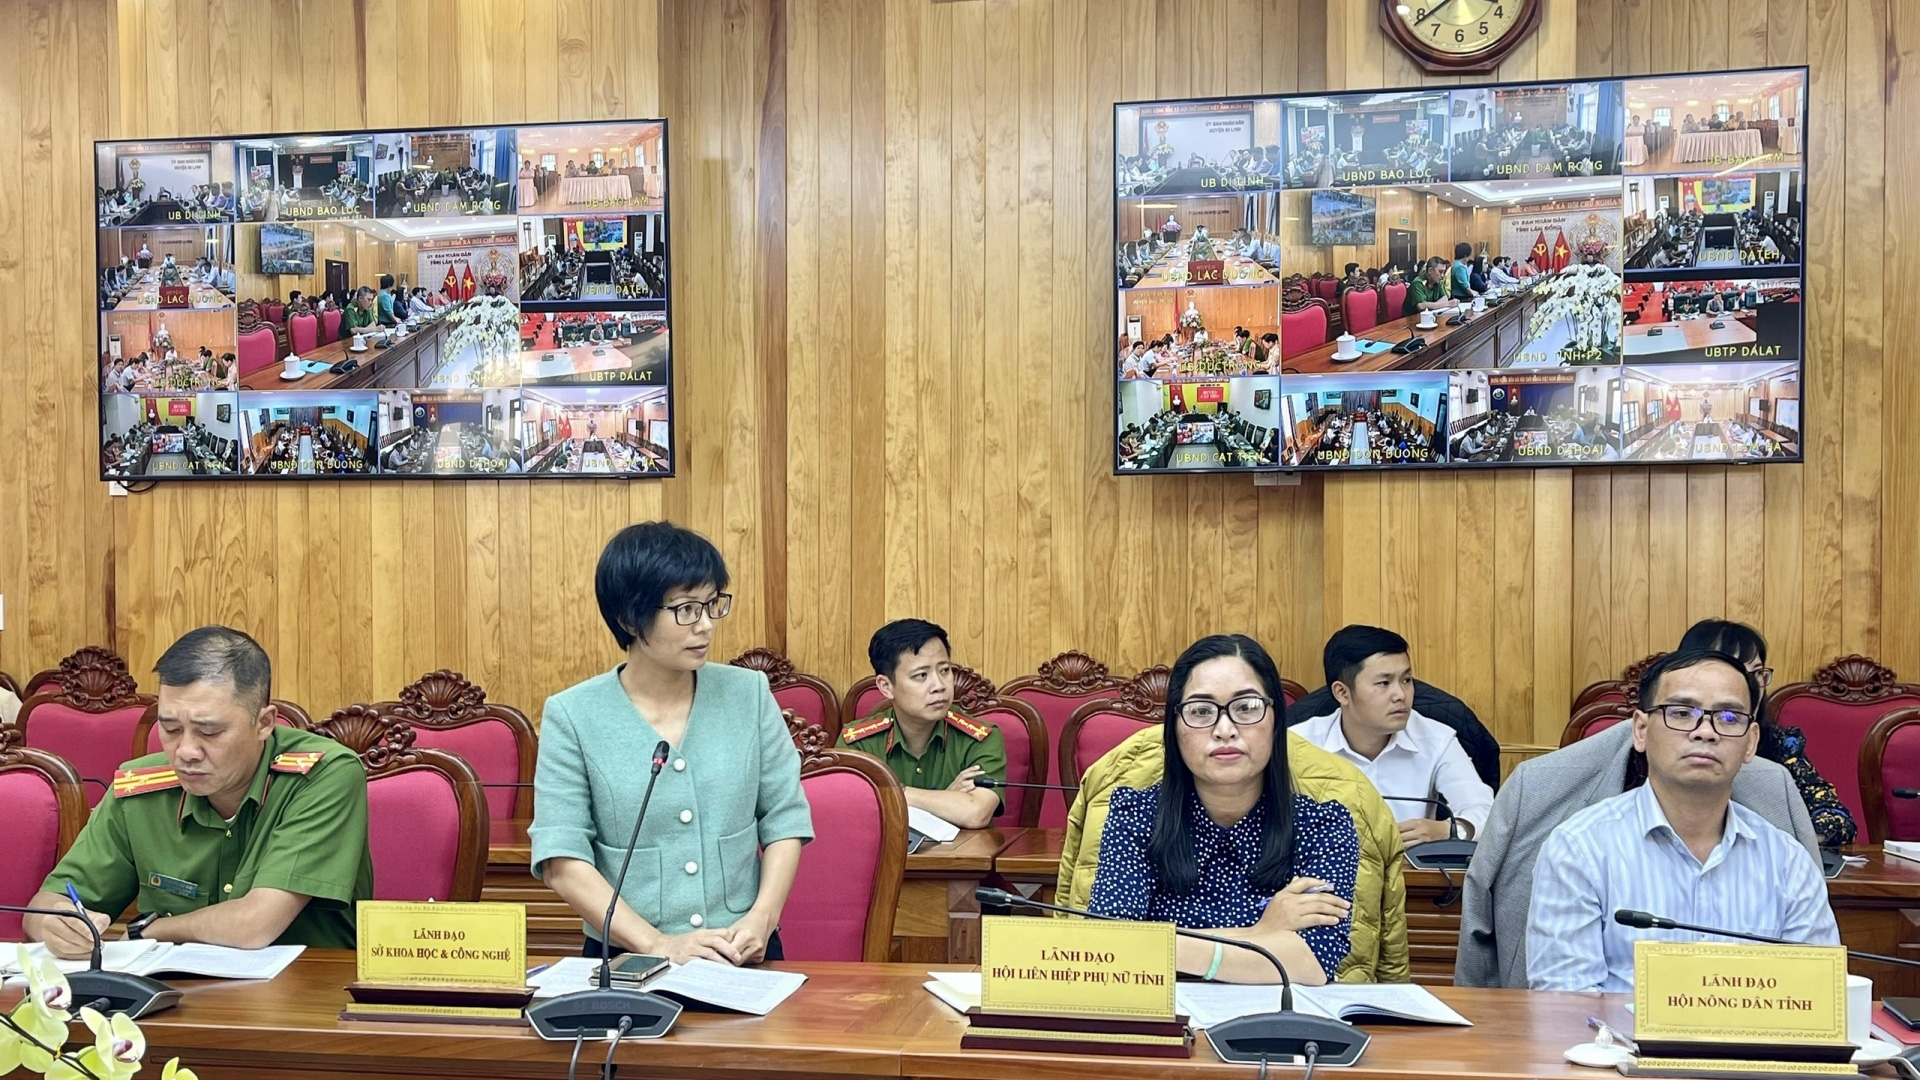 Lãnh đạo Sở Khoa học và Công nghệ Lâm Đồng phát biểu về năng lực kiểm nghiệm các mẫu thực phẩm tại địa phương